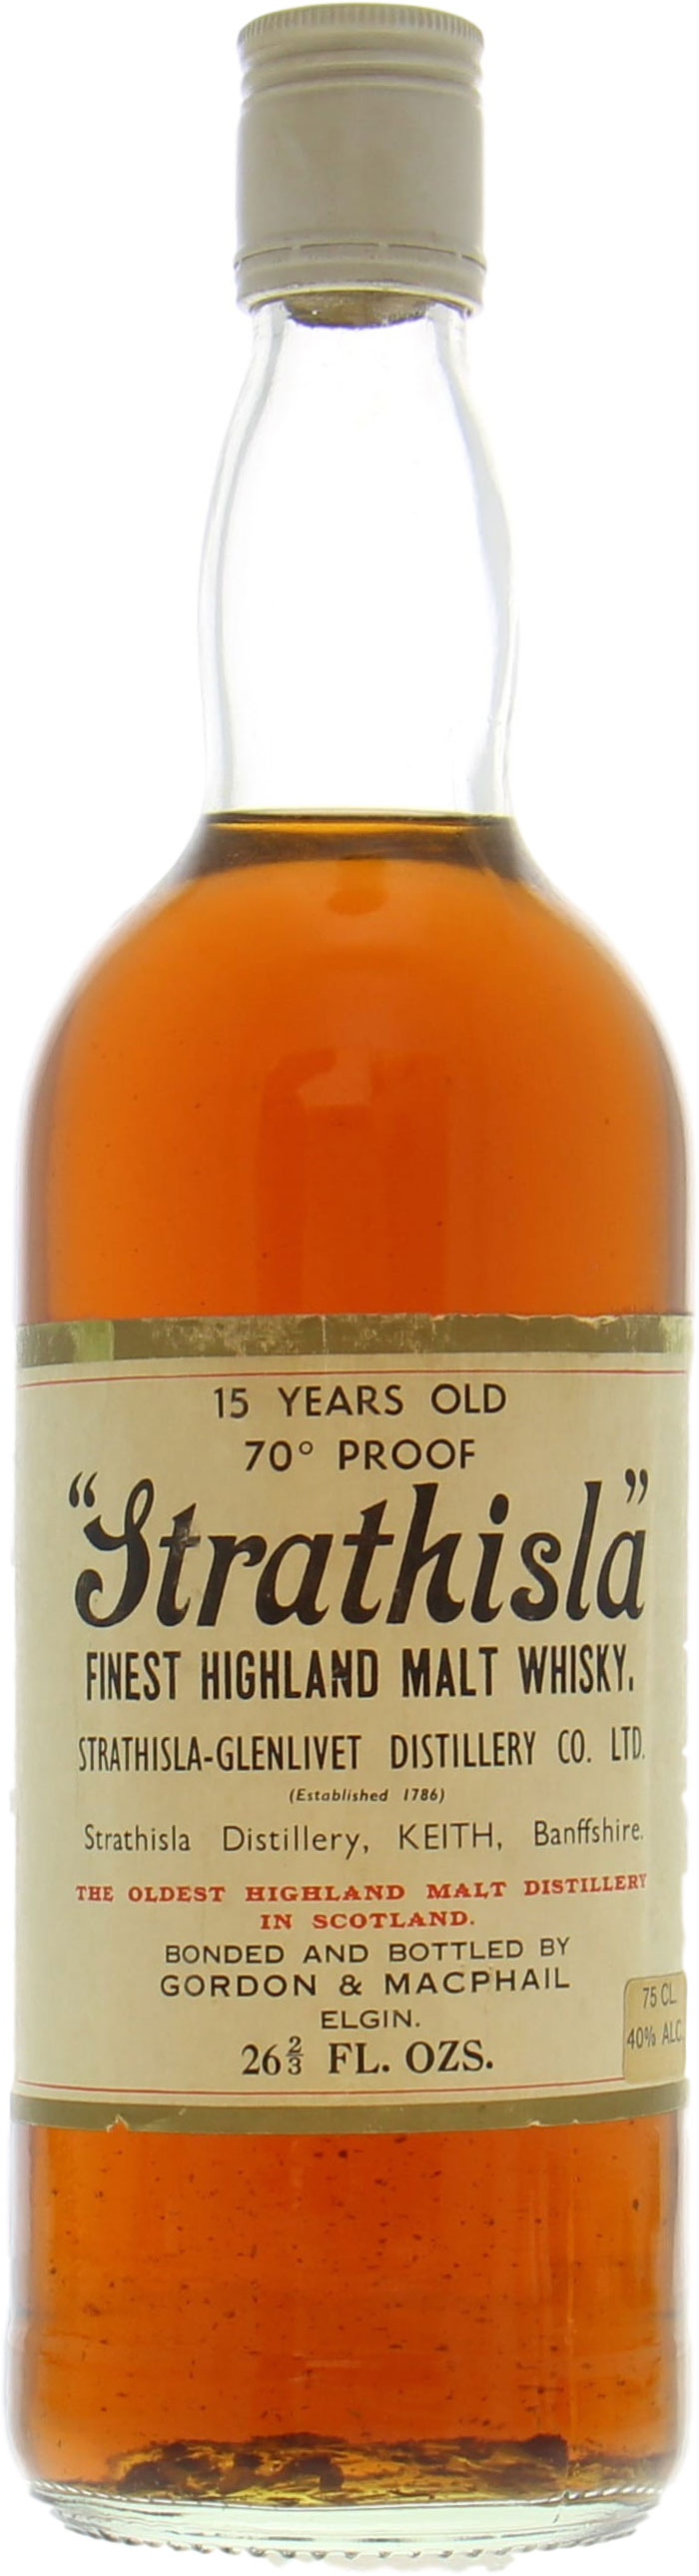 Strathisla - 15 Years Old Gordon & MacPhail 40% NV